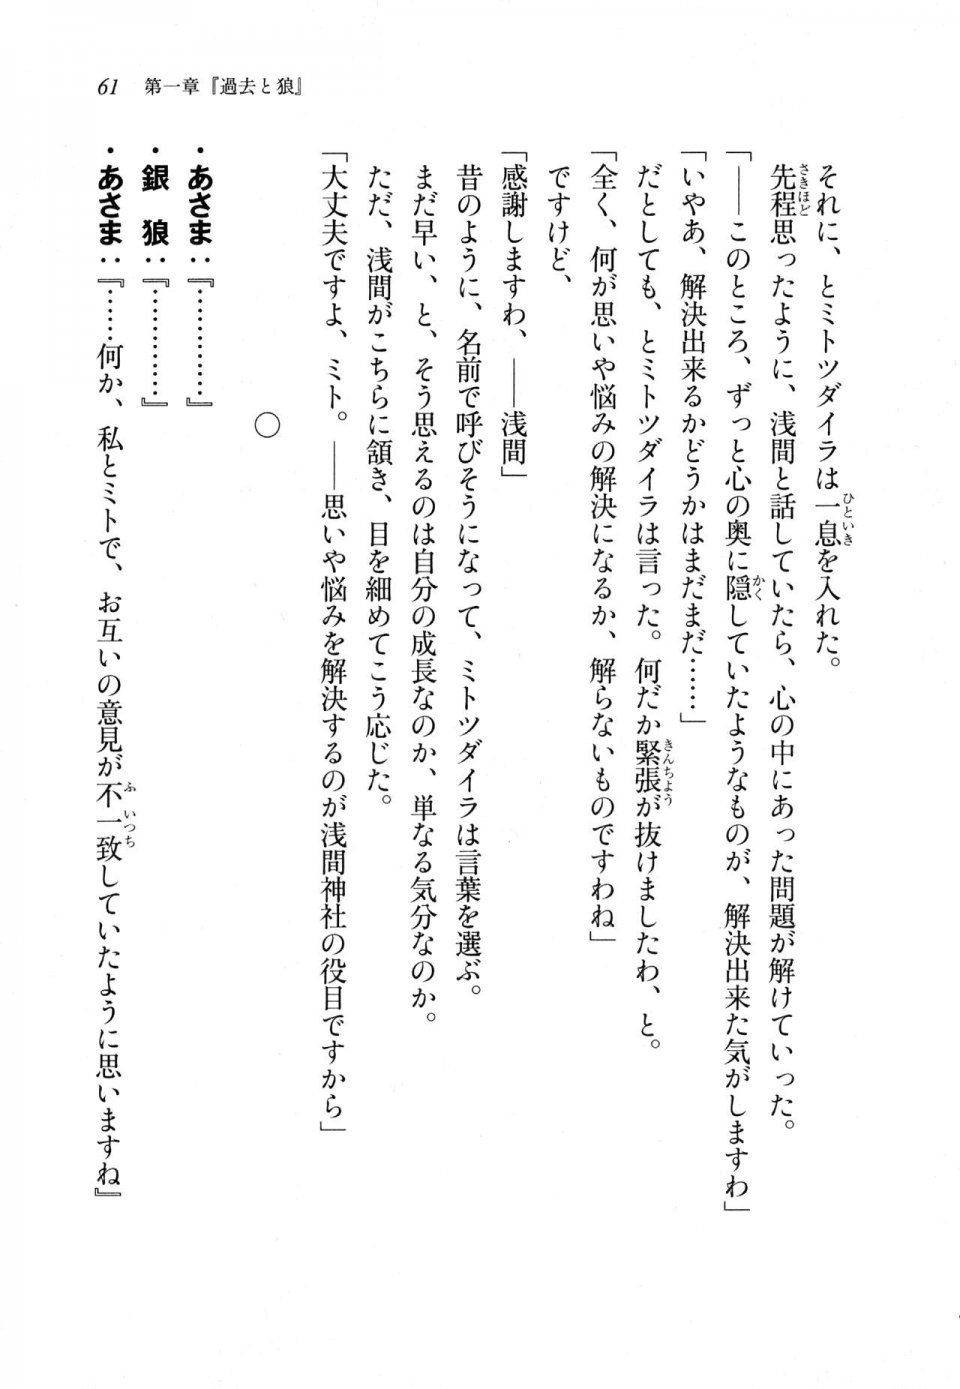 Kyoukai Senjou no Horizon LN Sidestory Vol 1 - Photo #59